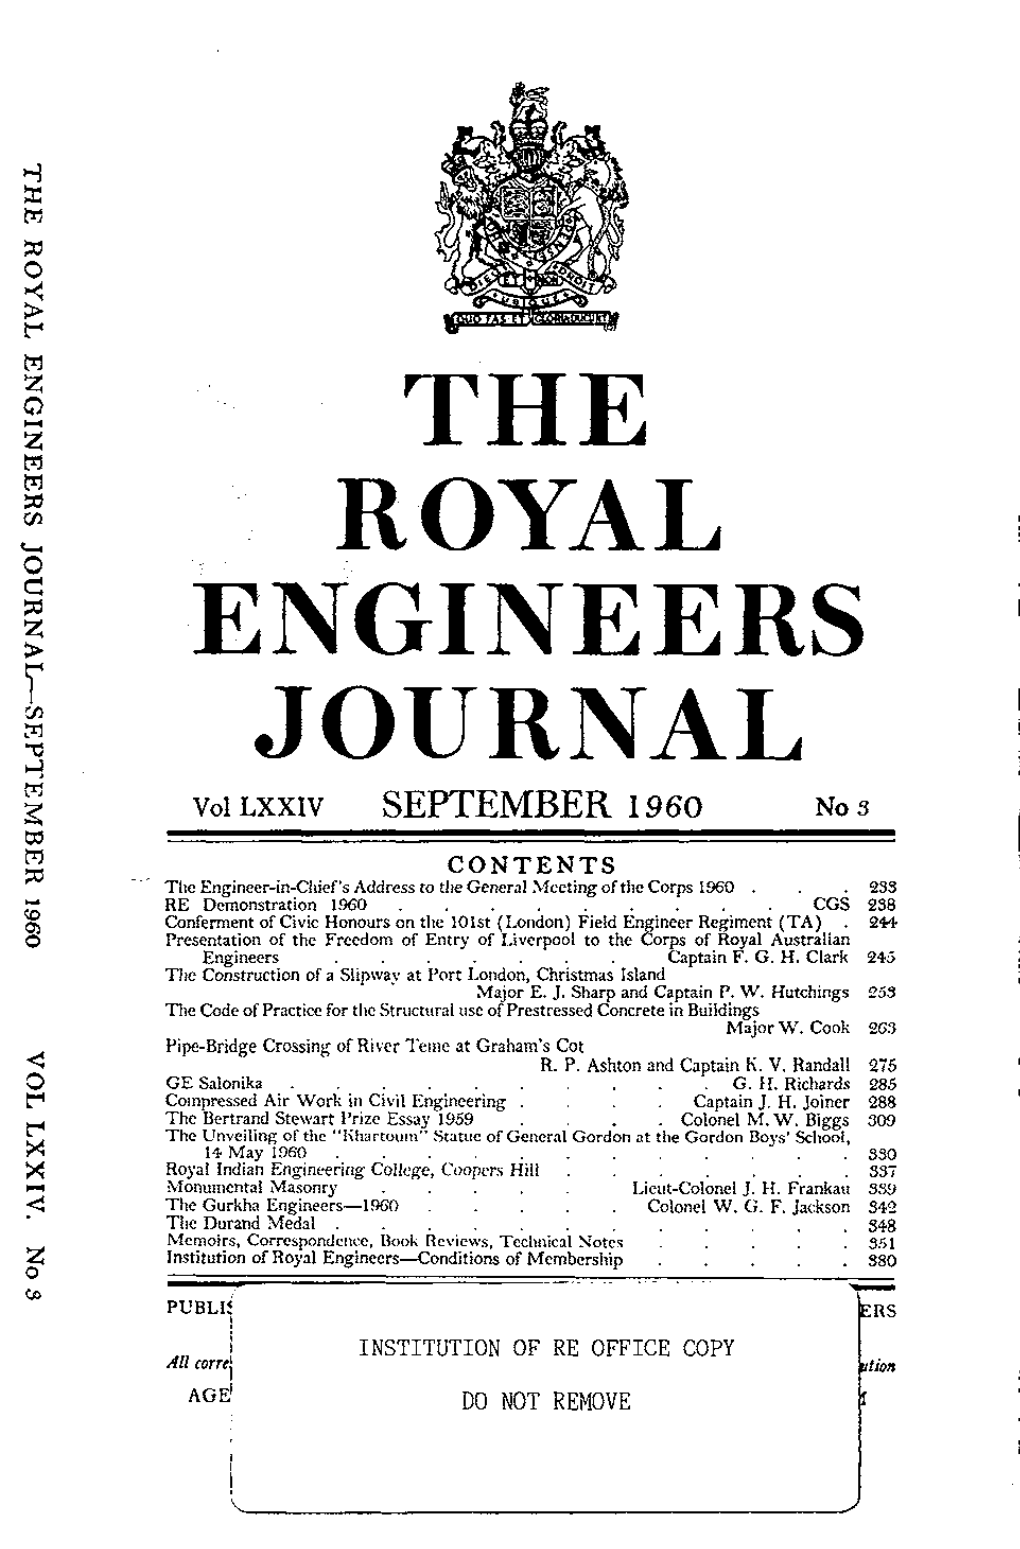 Engineers Journal